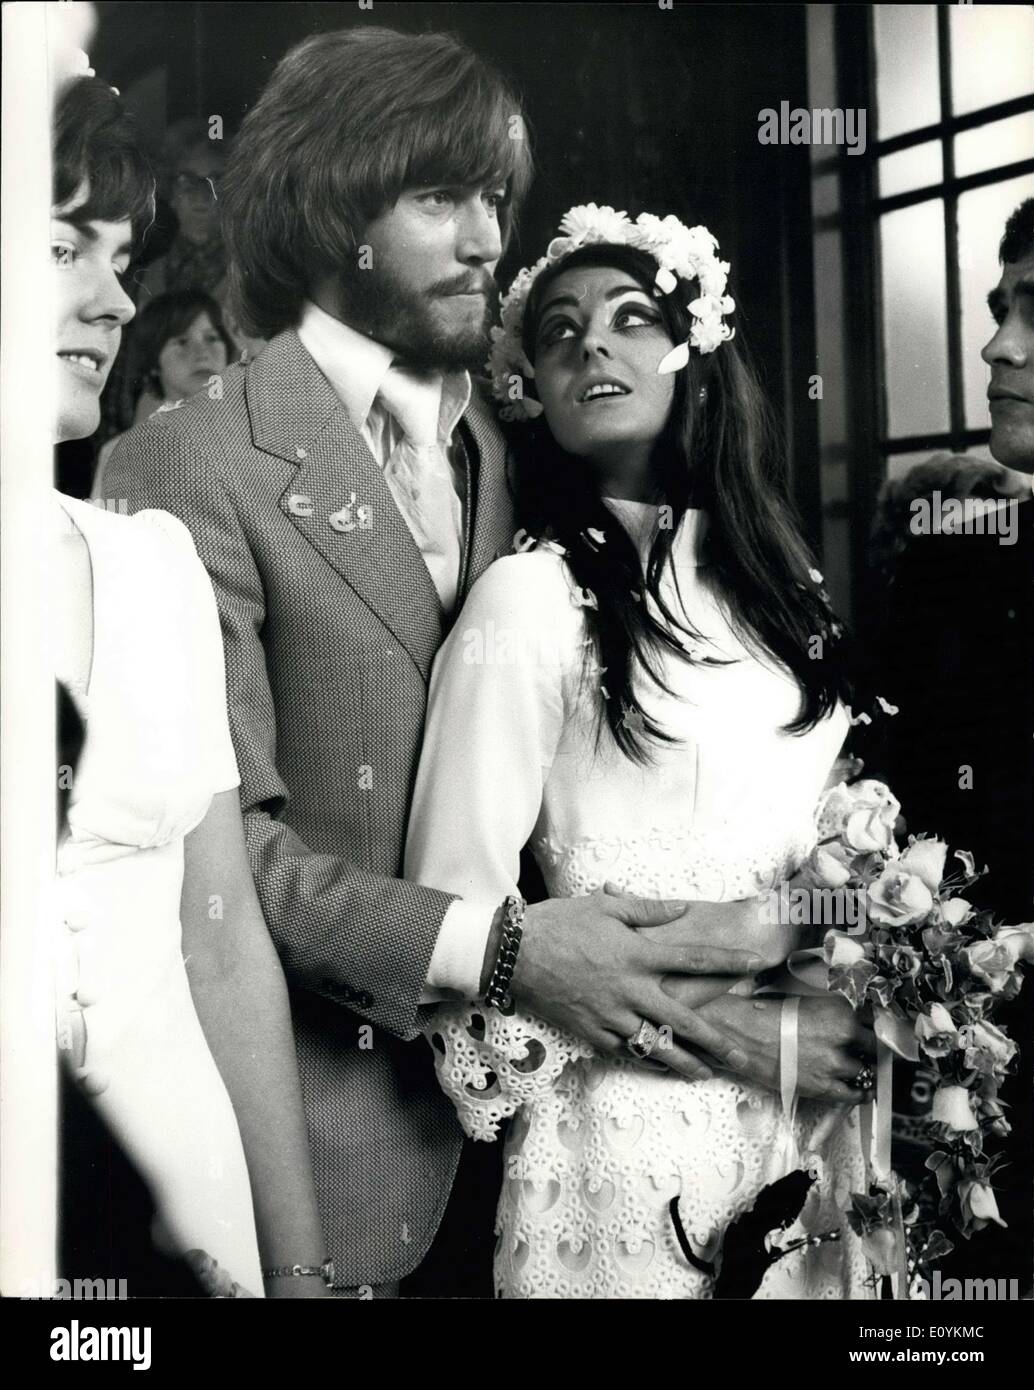 Septembre 01, 1970 - Bee Gee Barry Gibb jeudi 28 novembre 2013. Bee Gees chanteur et fondateur Barry Gibb a été mariée à Caxton Hall aujourd'hui - son anniversaire - à 20 ans, Linda Gray, un ancien ''Miss'' d''Édimbourg. Barry a fondé le groupe avec ses deux frères Robin et Maurice. Ils ont rompu en décembre dernier et a annoncé il y a à peine une semaine qu'ils étaient la réforme. Barry's mariage précédent a été dissous l'an dernier. photo montre l'heureux couple sur la photo après la cérémonie d'aujourd'hui. Banque D'Images